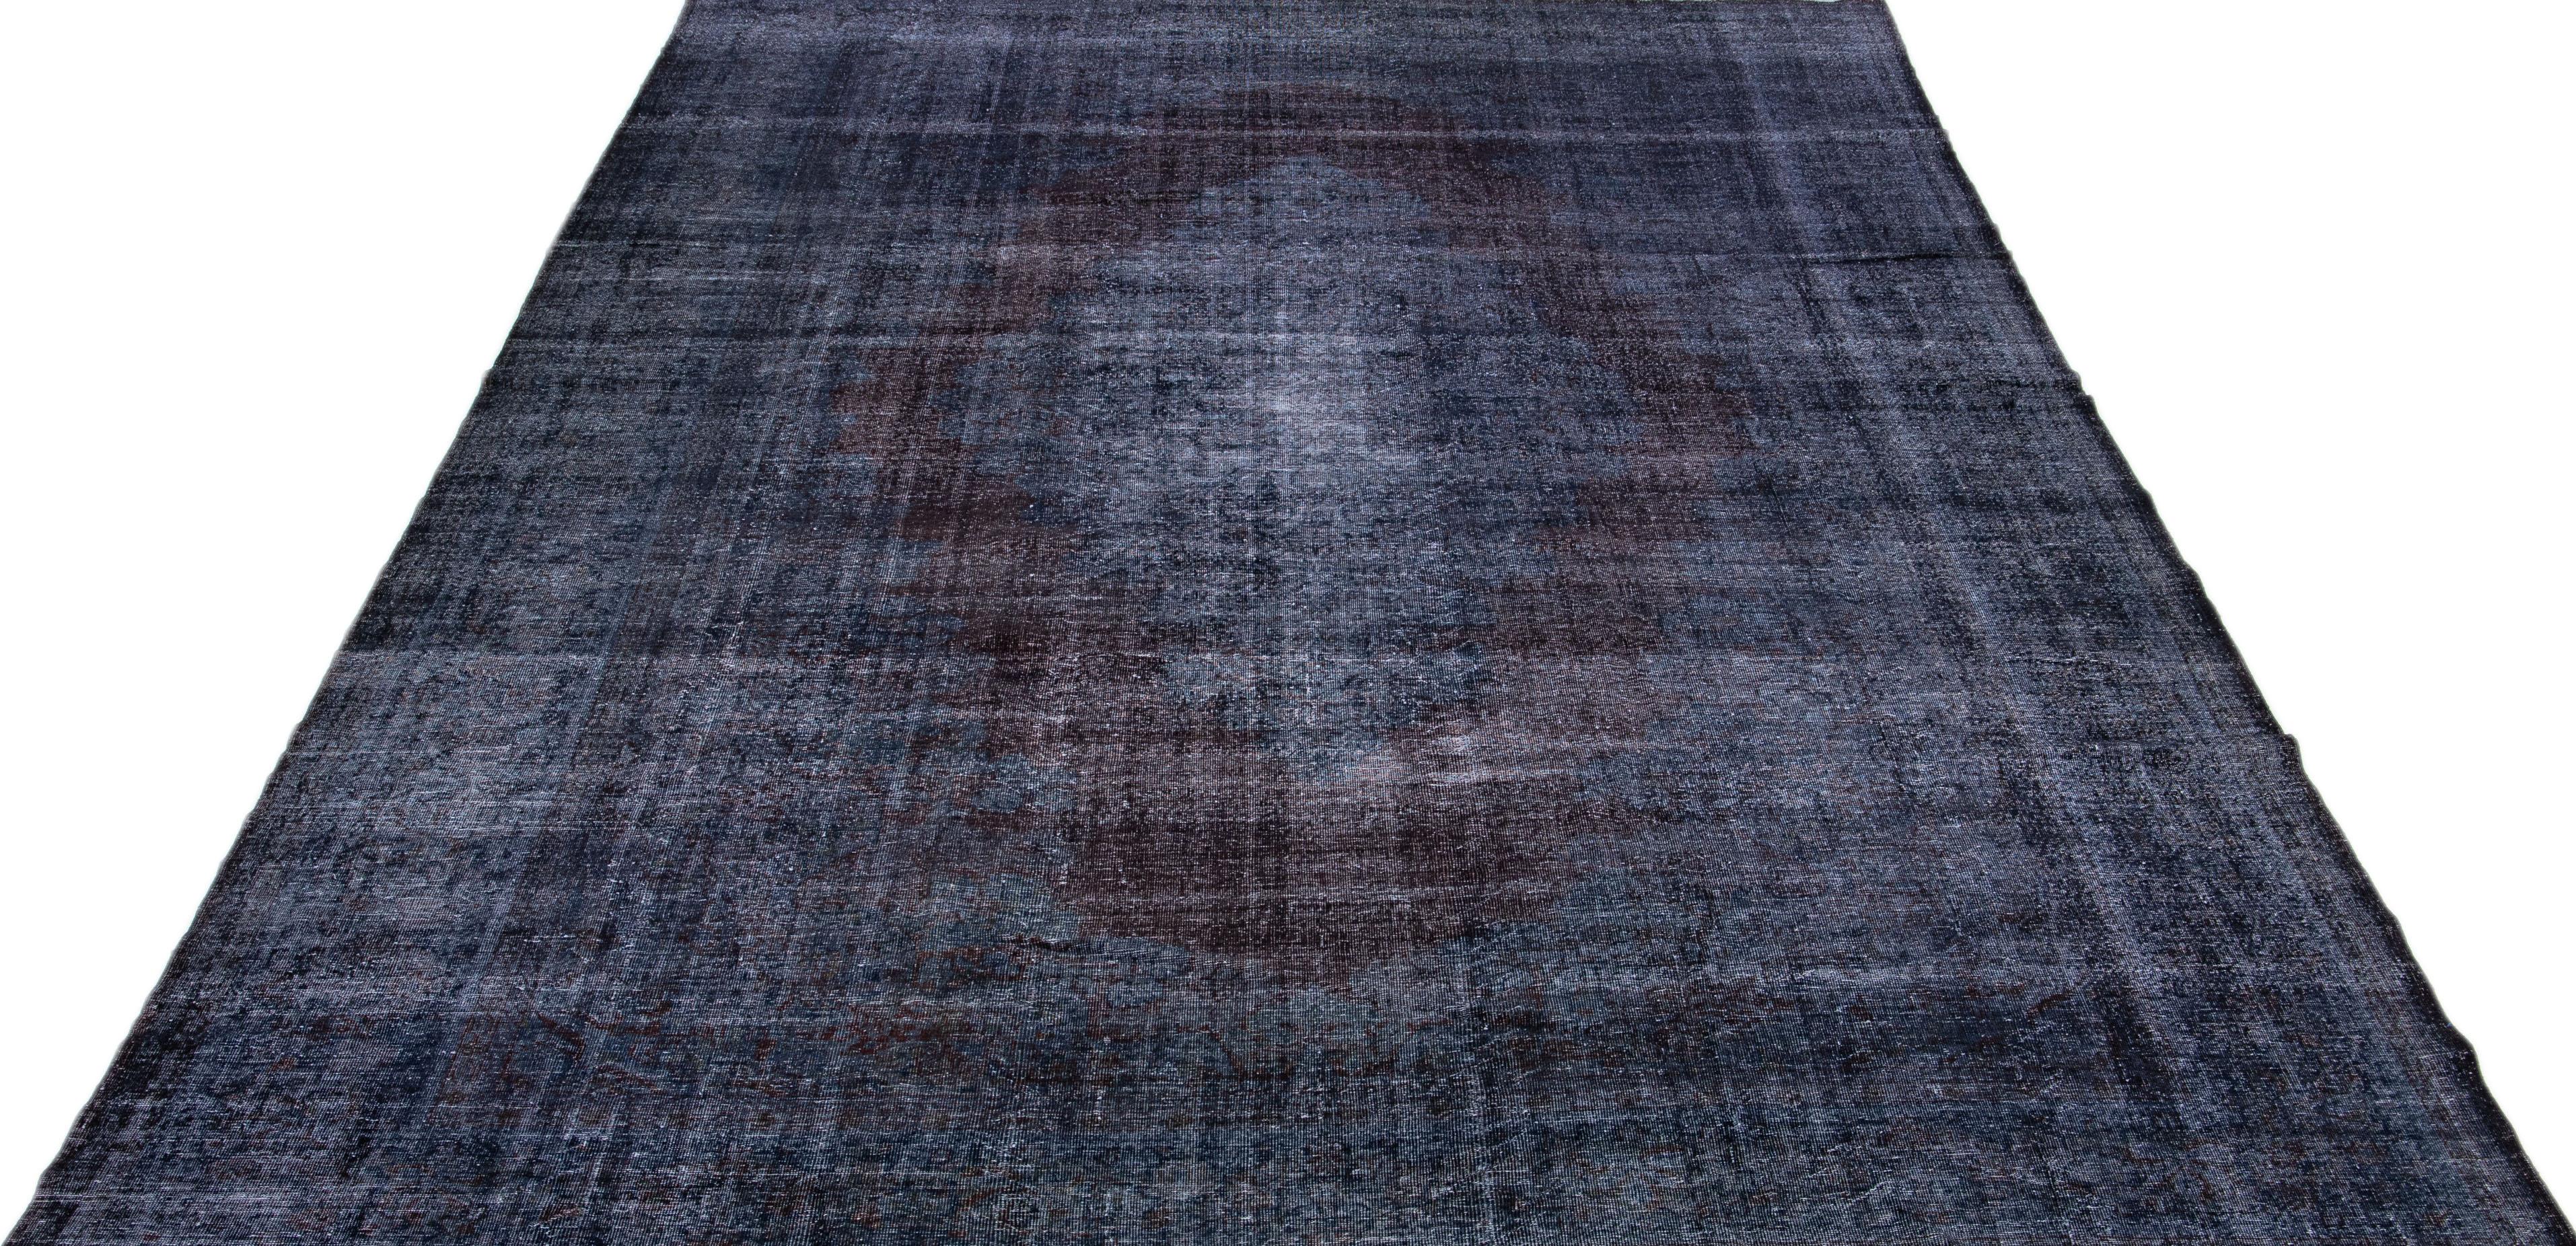 Magnifique tapis Vintage en laine surteinte nouée à la main avec un champ de couleur bleu foncé. Ce tapis turc présente des accents bruns dans un magnifique motif de médaillon.

Ce tapis mesure : 11' x 16'8